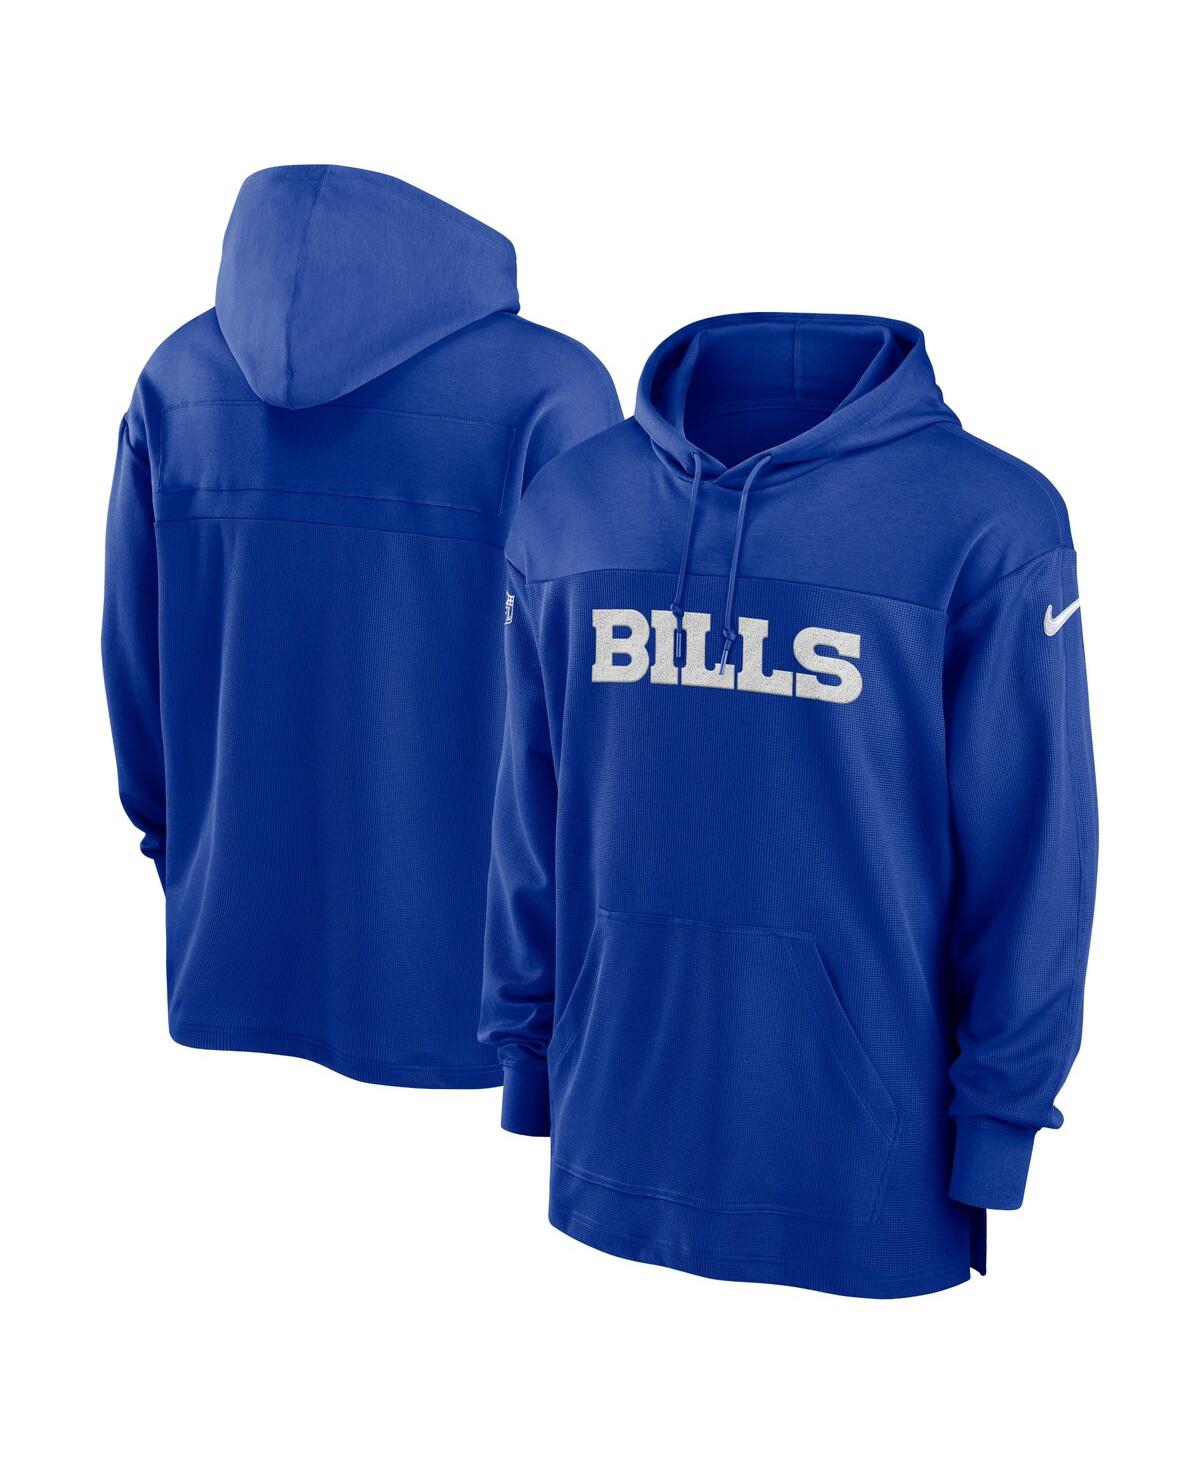 Nike Buffalo Bills Sideline  Men's Dri-fit Nfl Long-sleeve Hooded Top In Blue